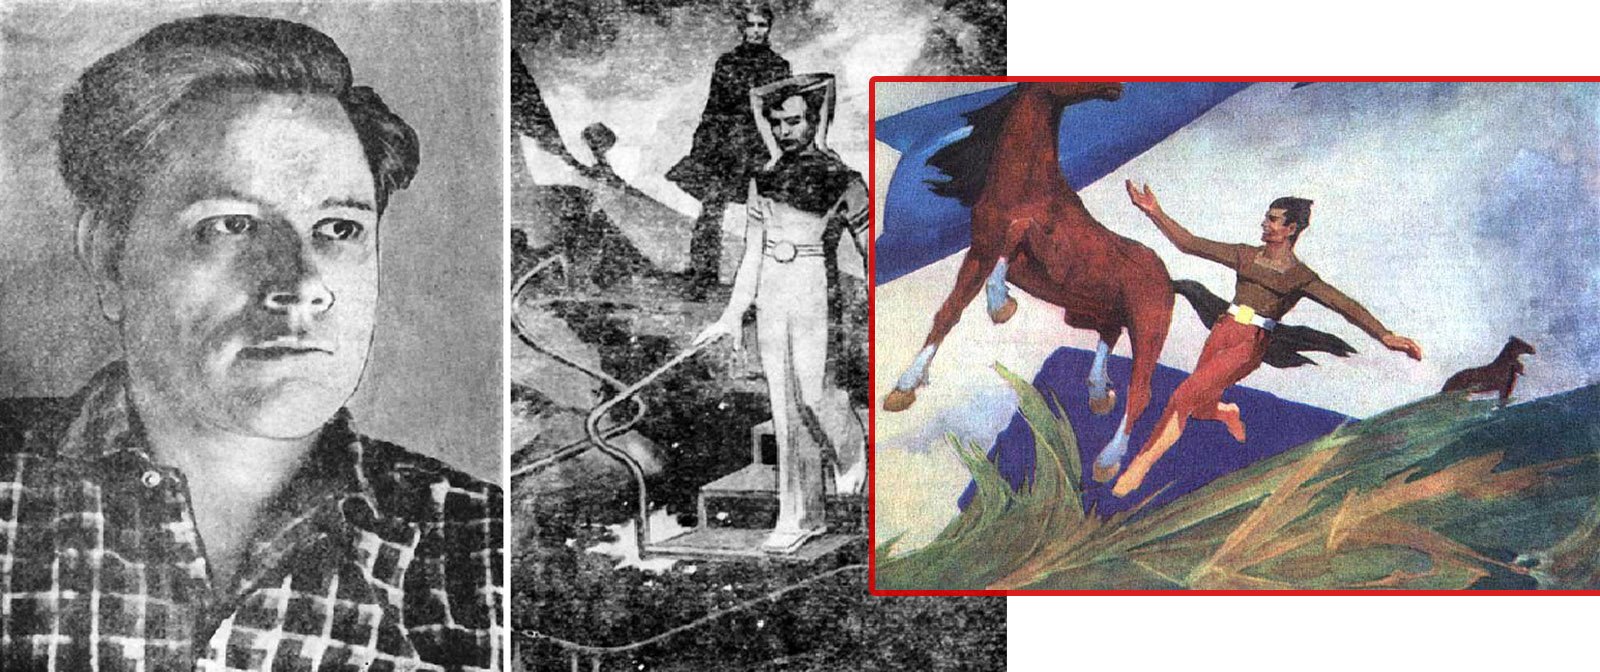 История парализованного художника Геннадия Голобокова — написавшего свыше 200 картин. Как ему это удалось?